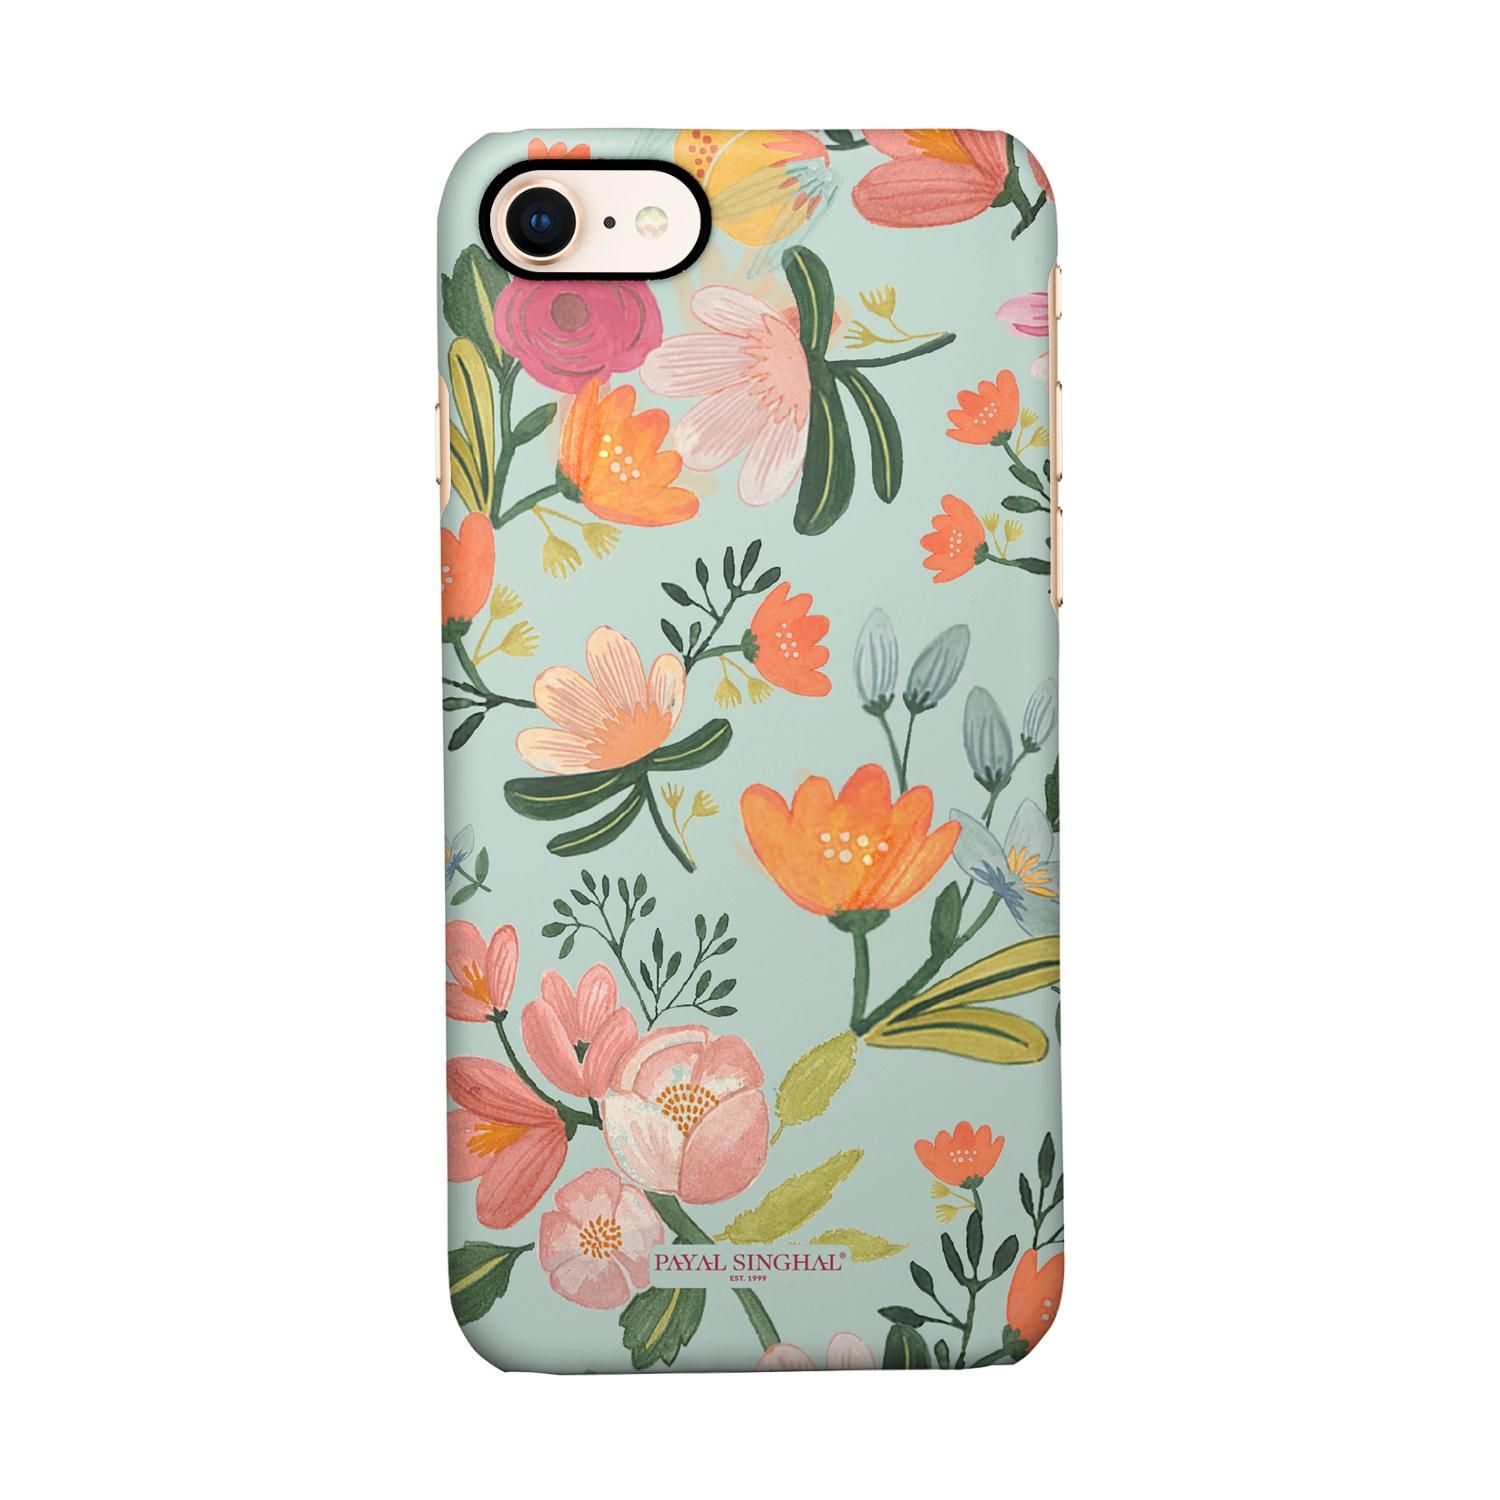 Buy Payal Singhal Aqua Handpainted Flower - Sleek Phone Case for iPhone 8 Online